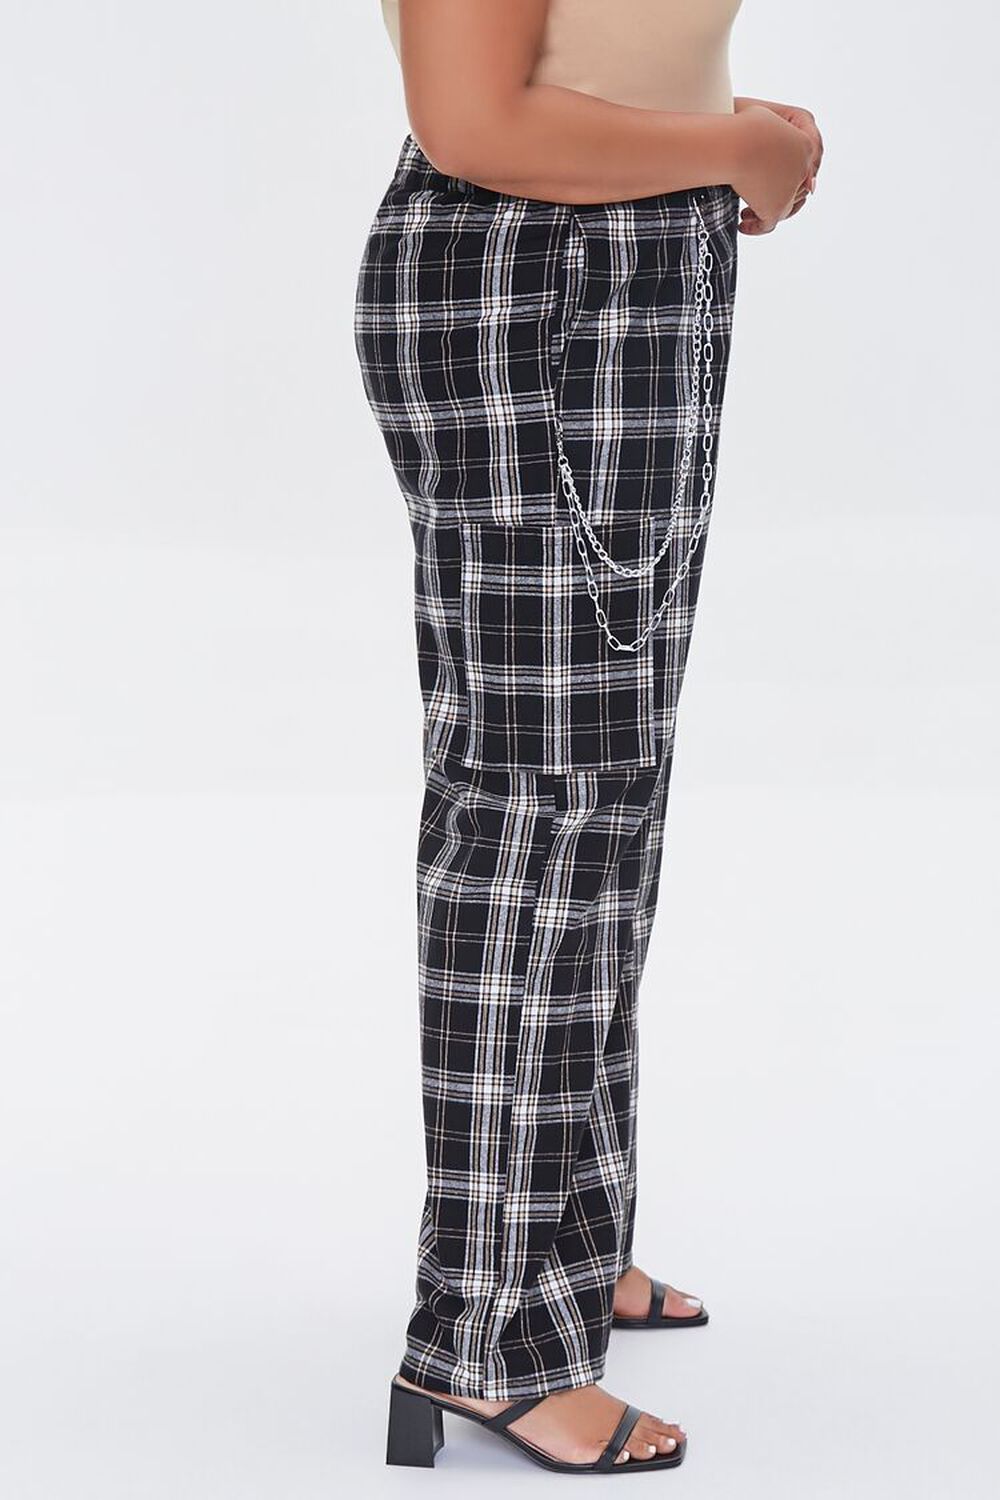 BLACK/MULTI Plus Size Wallet Chain Plaid Pants, image 3